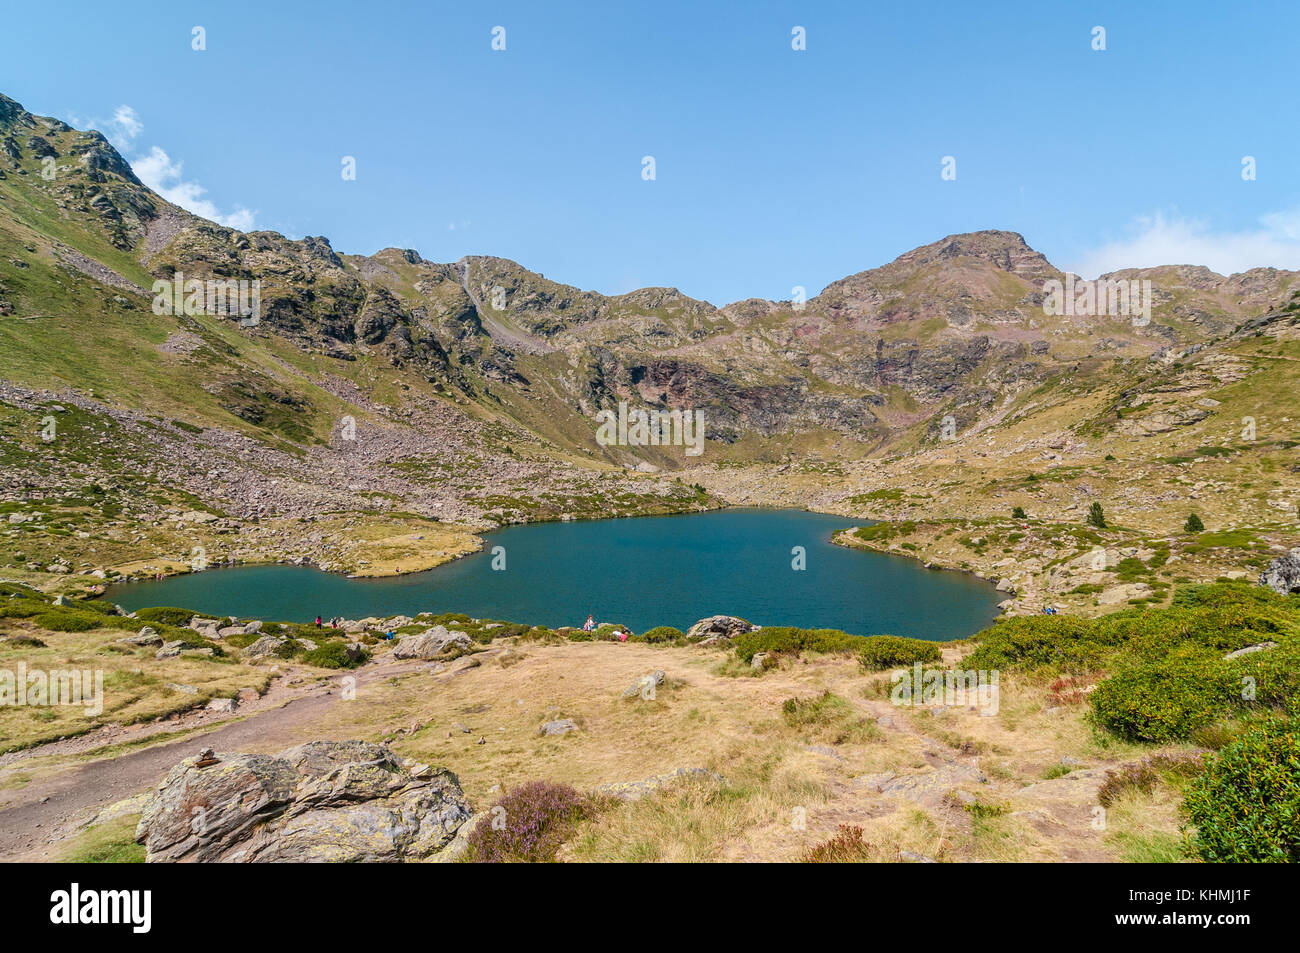 Angesichts der hohen See namens "Estany del mig' - midle See, in der Nähe von Ordino, Tristaina, Andorra Stockfoto